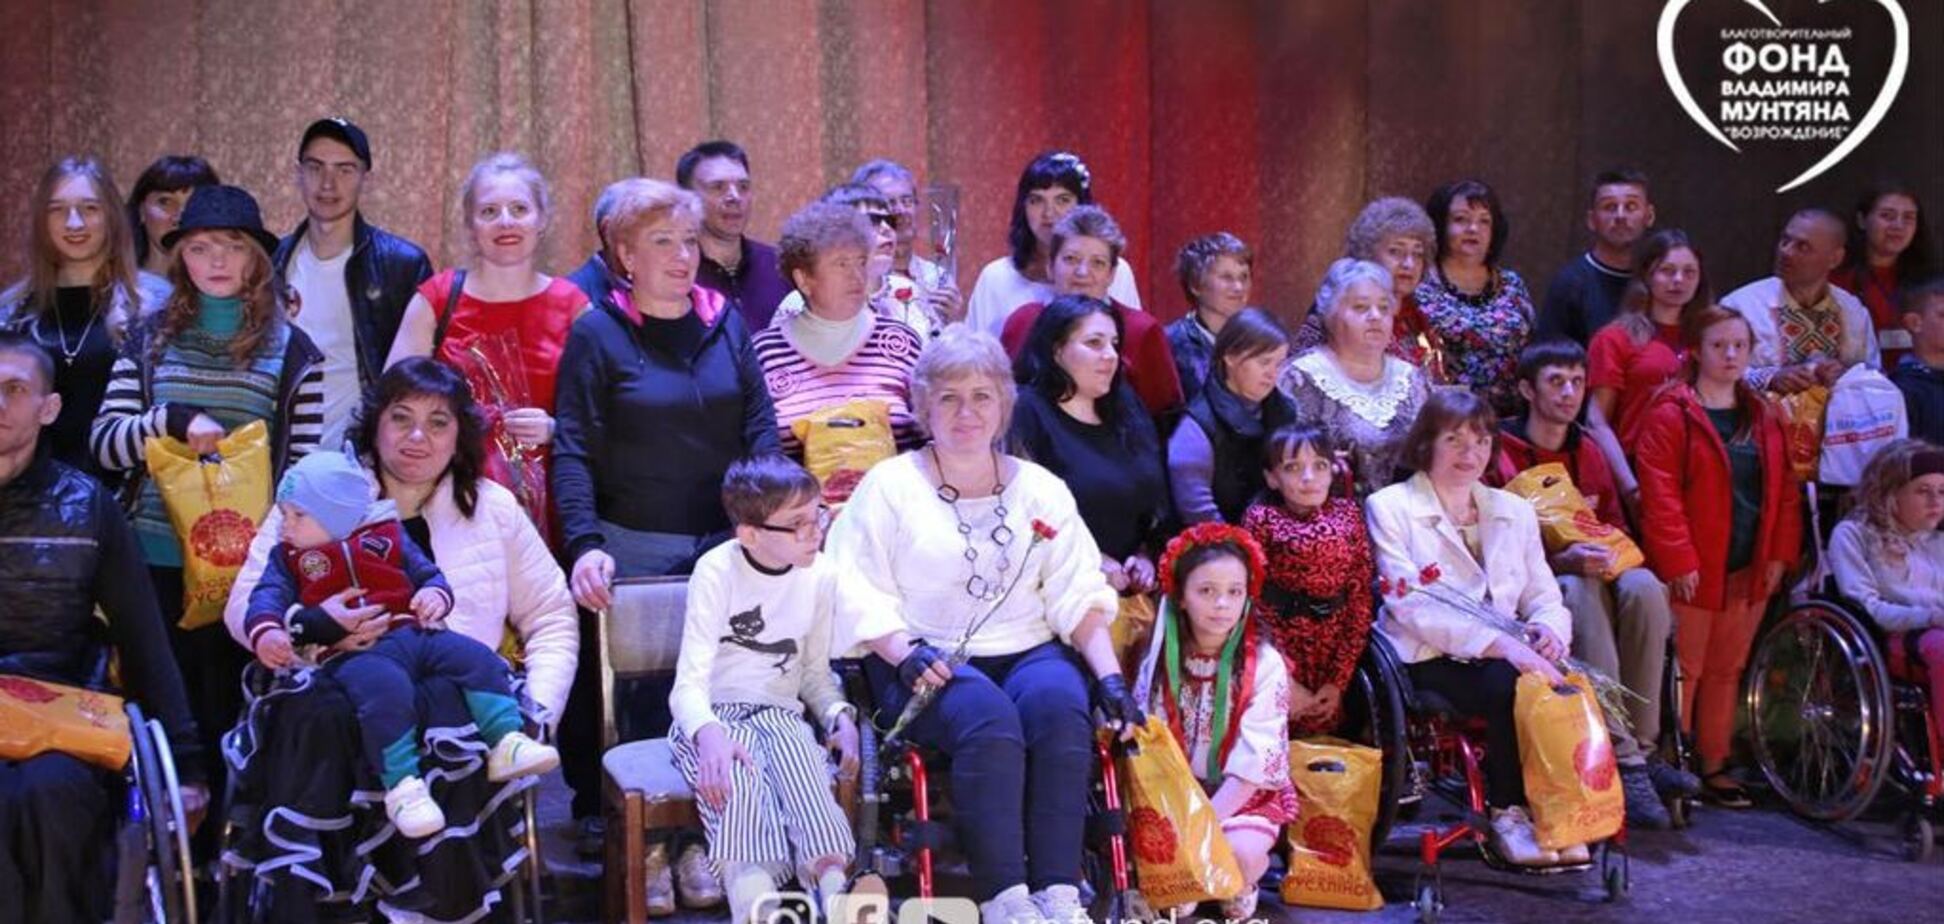  Владимир Мунтян поддержал фестиваль для людей с инвалидностью 'Дніпровські хвилі'